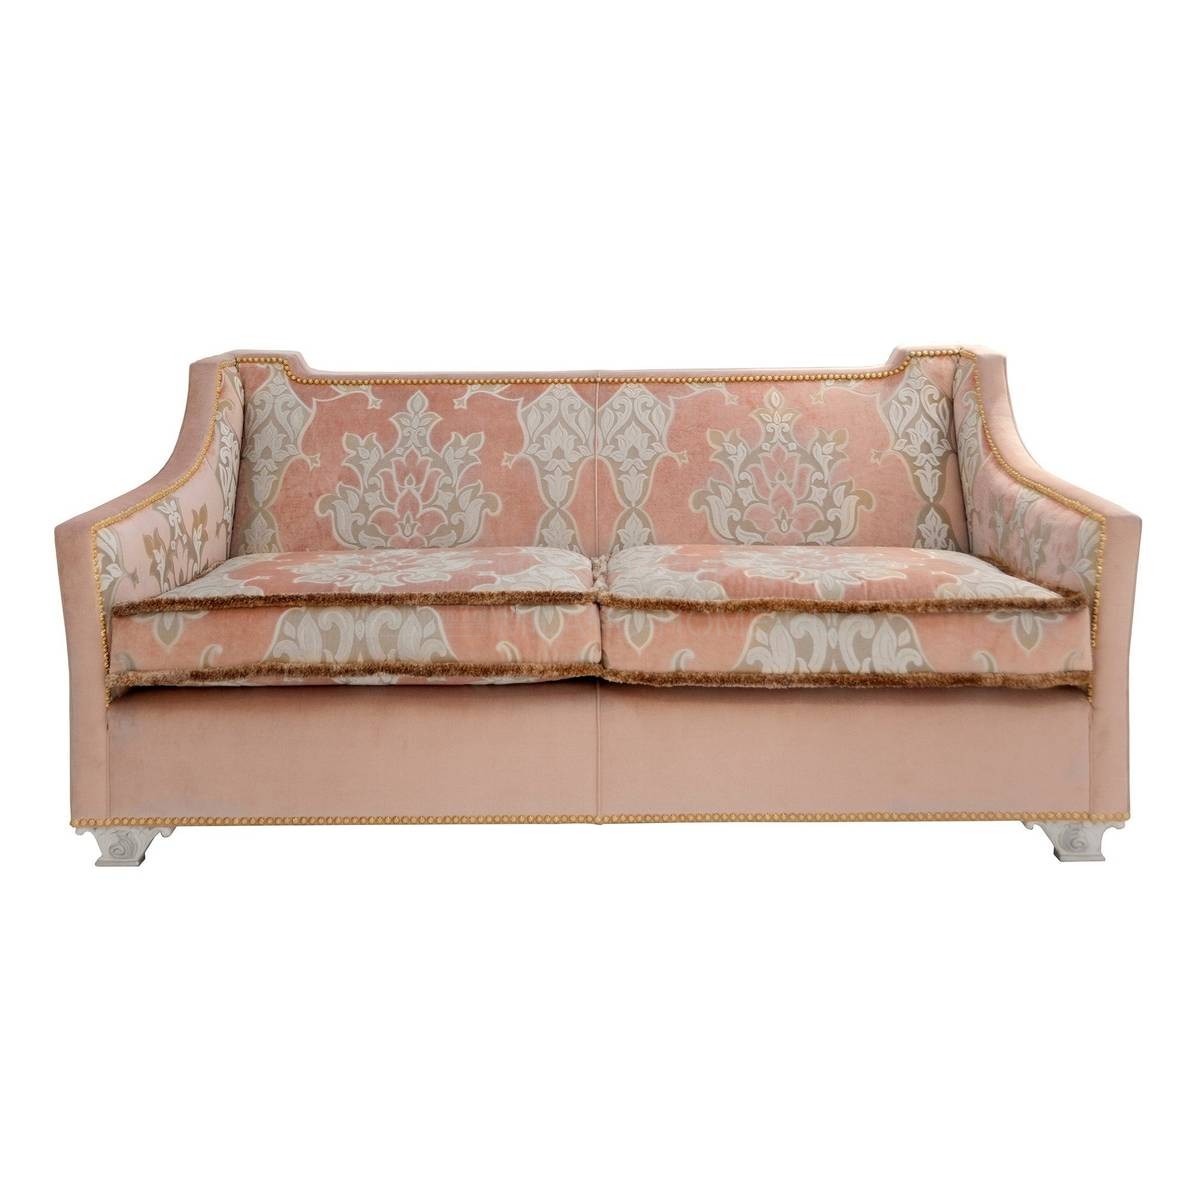 Прямой диван The Upholstery/D423 из Италии фабрики FRANCESCO MOLON